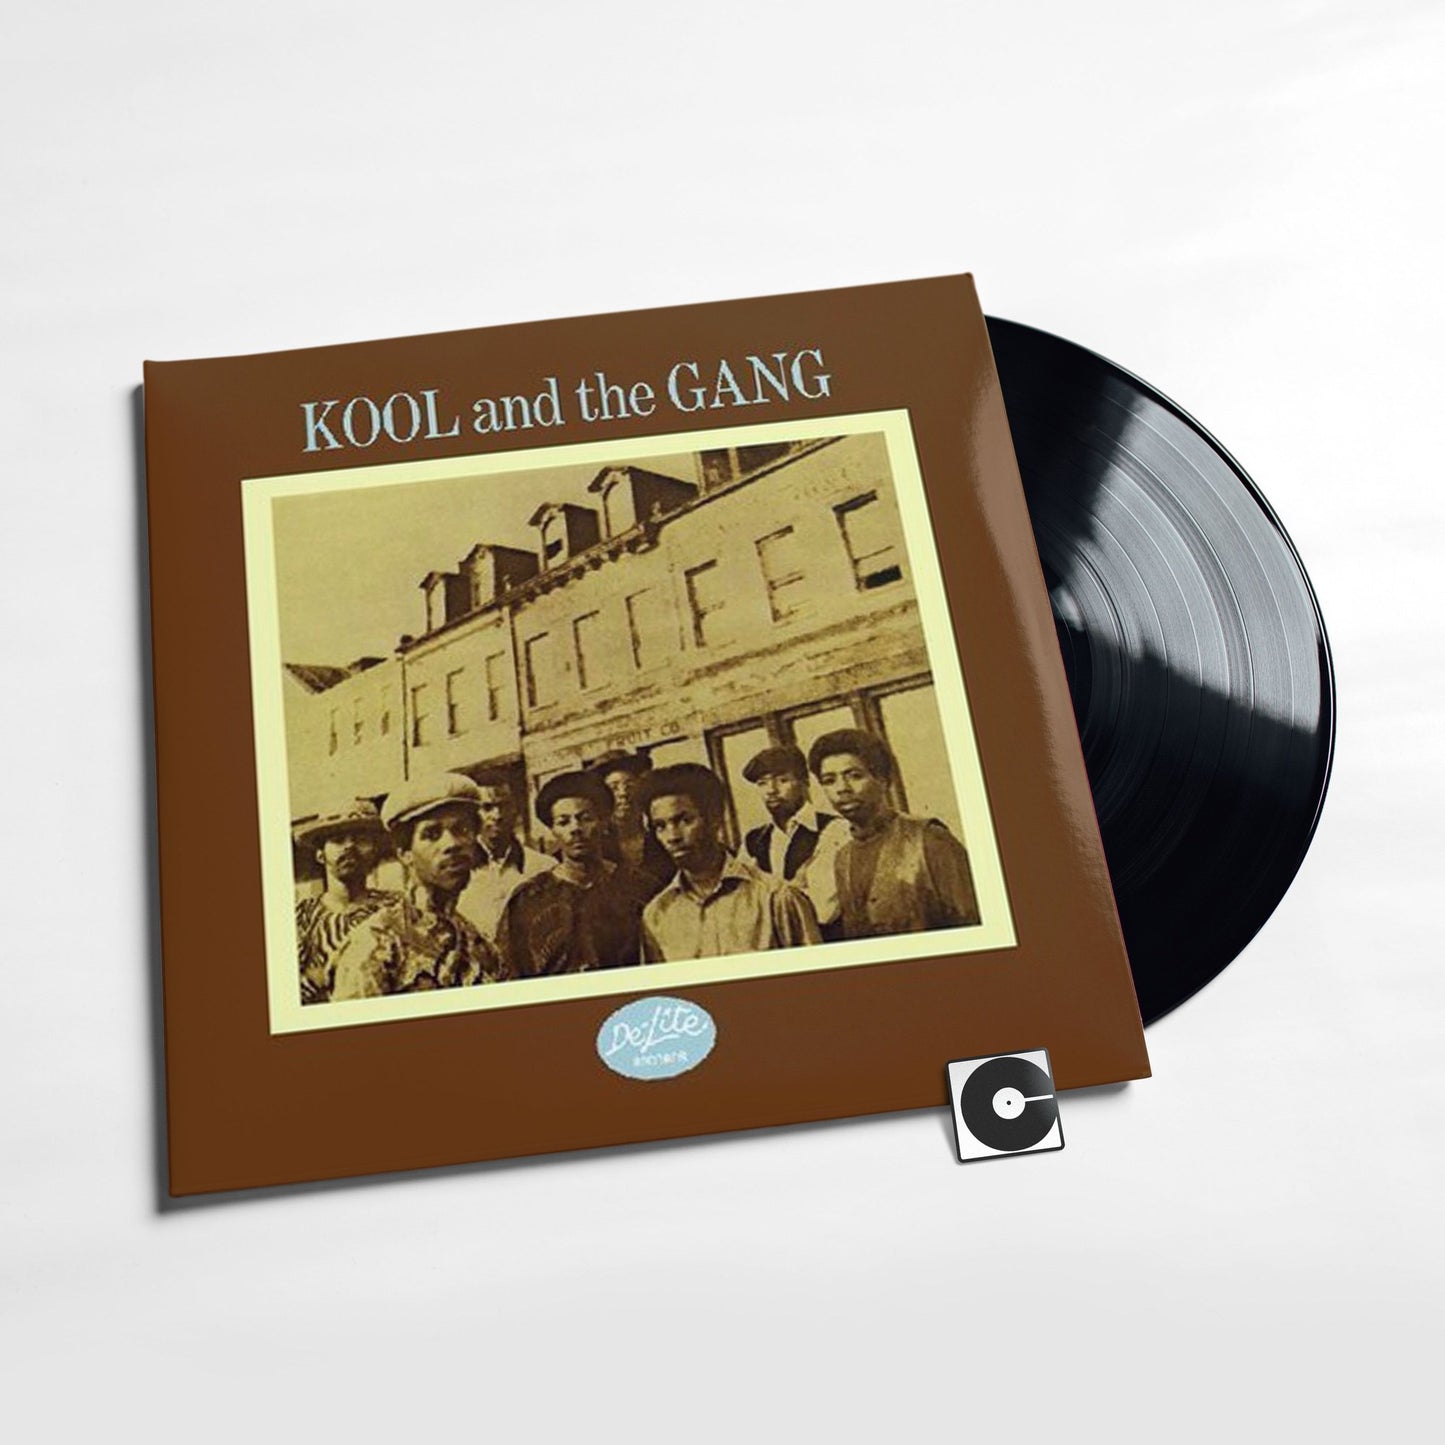 Kool And The Gang - "Kool And The Gang"